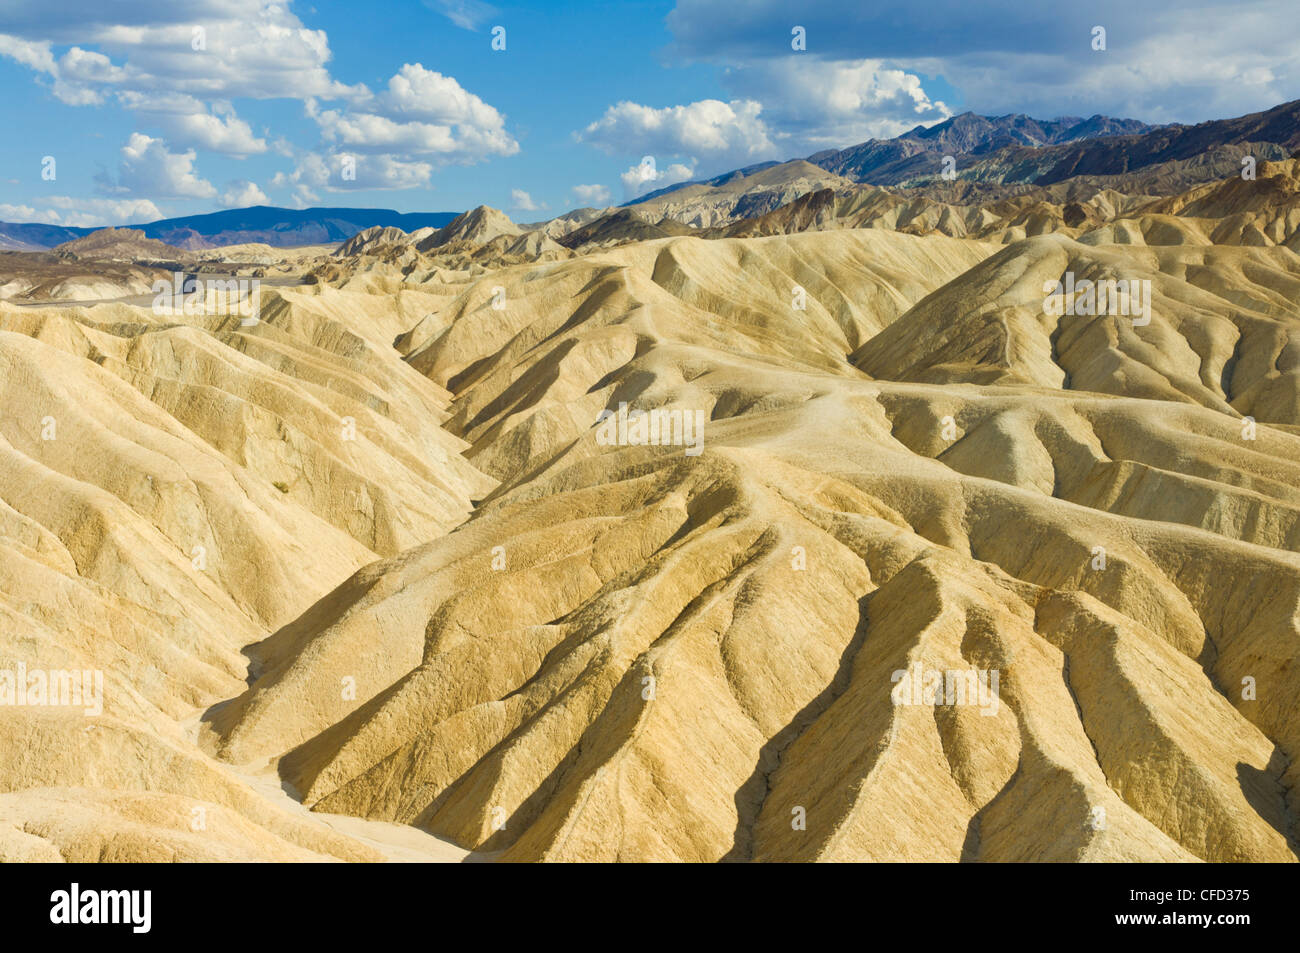 Kalksteinen erodiert Formationen der Zabriske Punkt, Furnace Creek, Death Valley Nationalpark, Kalifornien, Vereinigte Staaten von Amerika Stockfoto